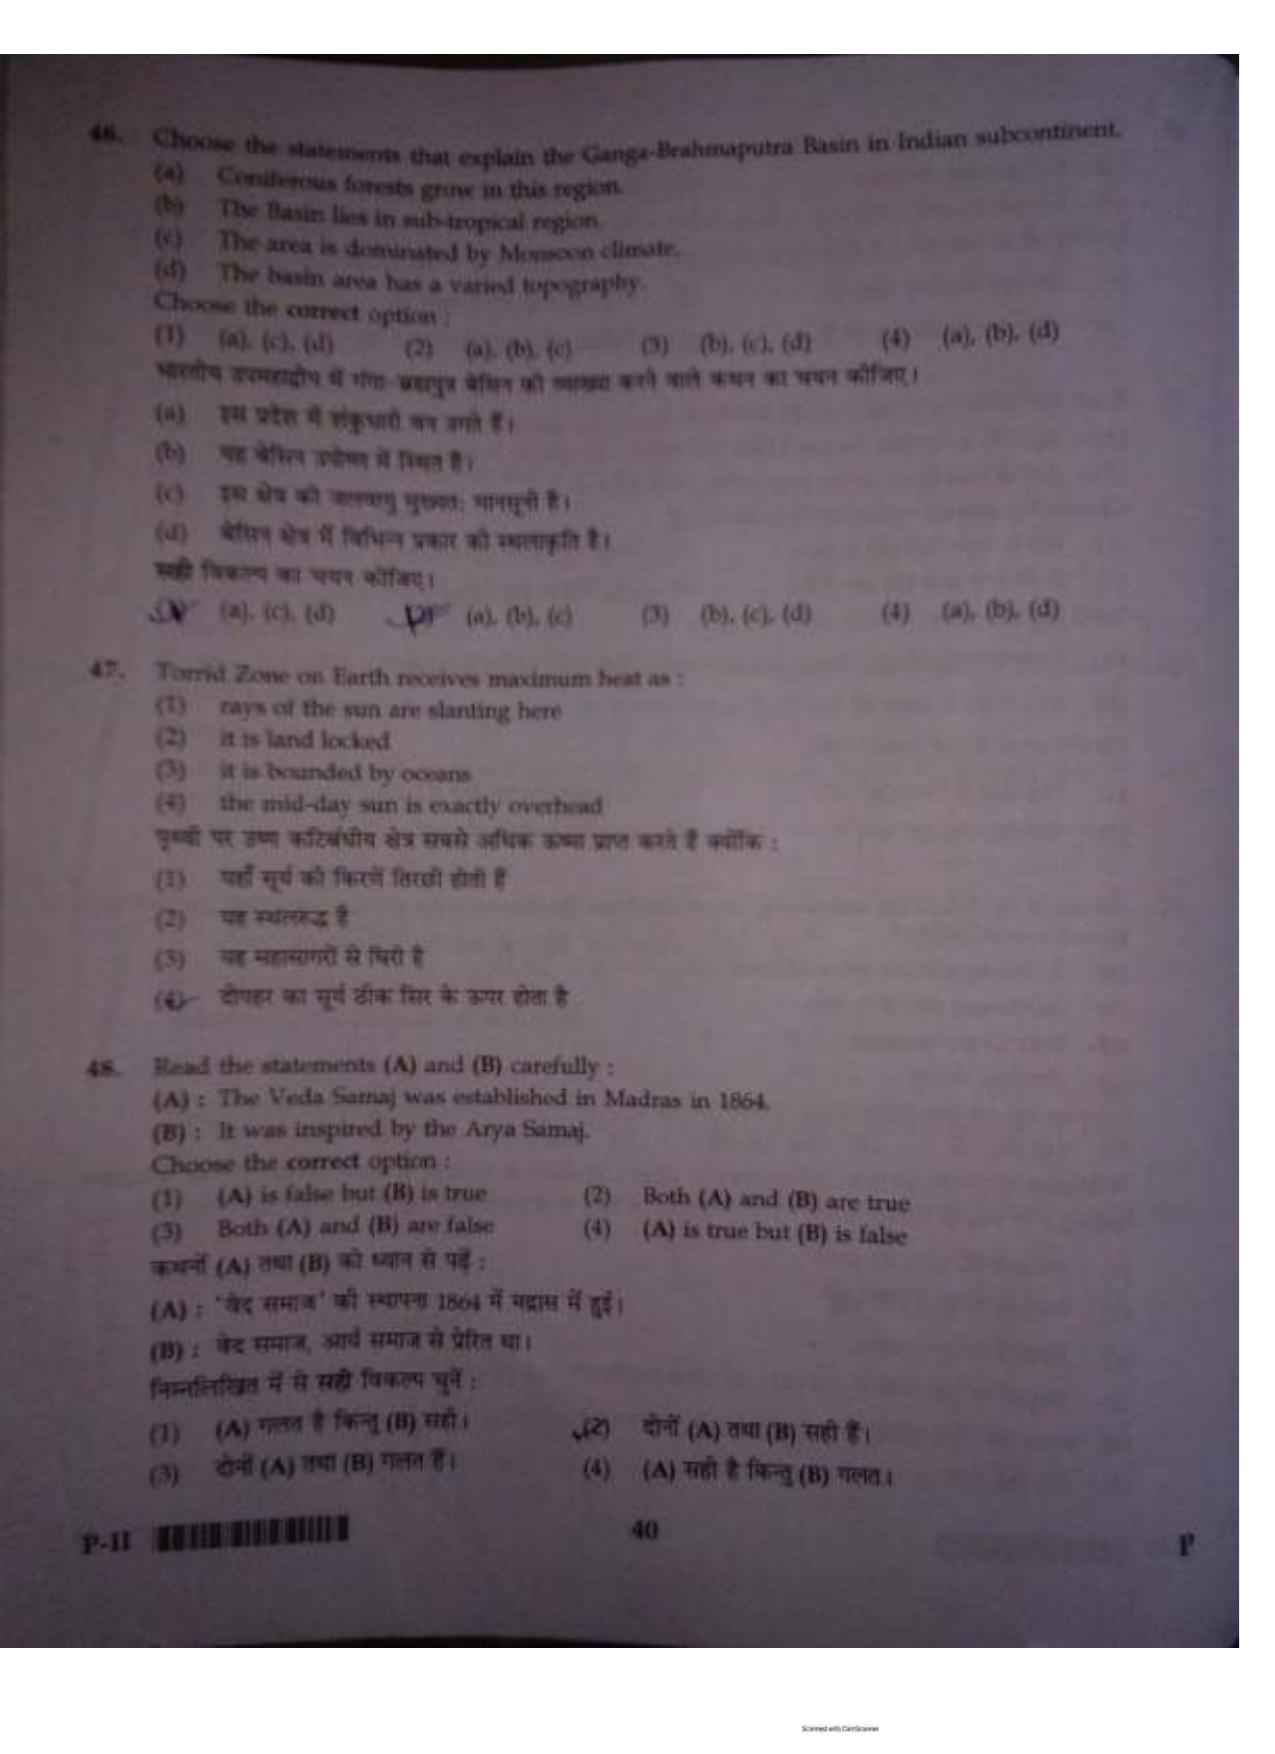 ctet paper 2 question paper SET P - Page 39